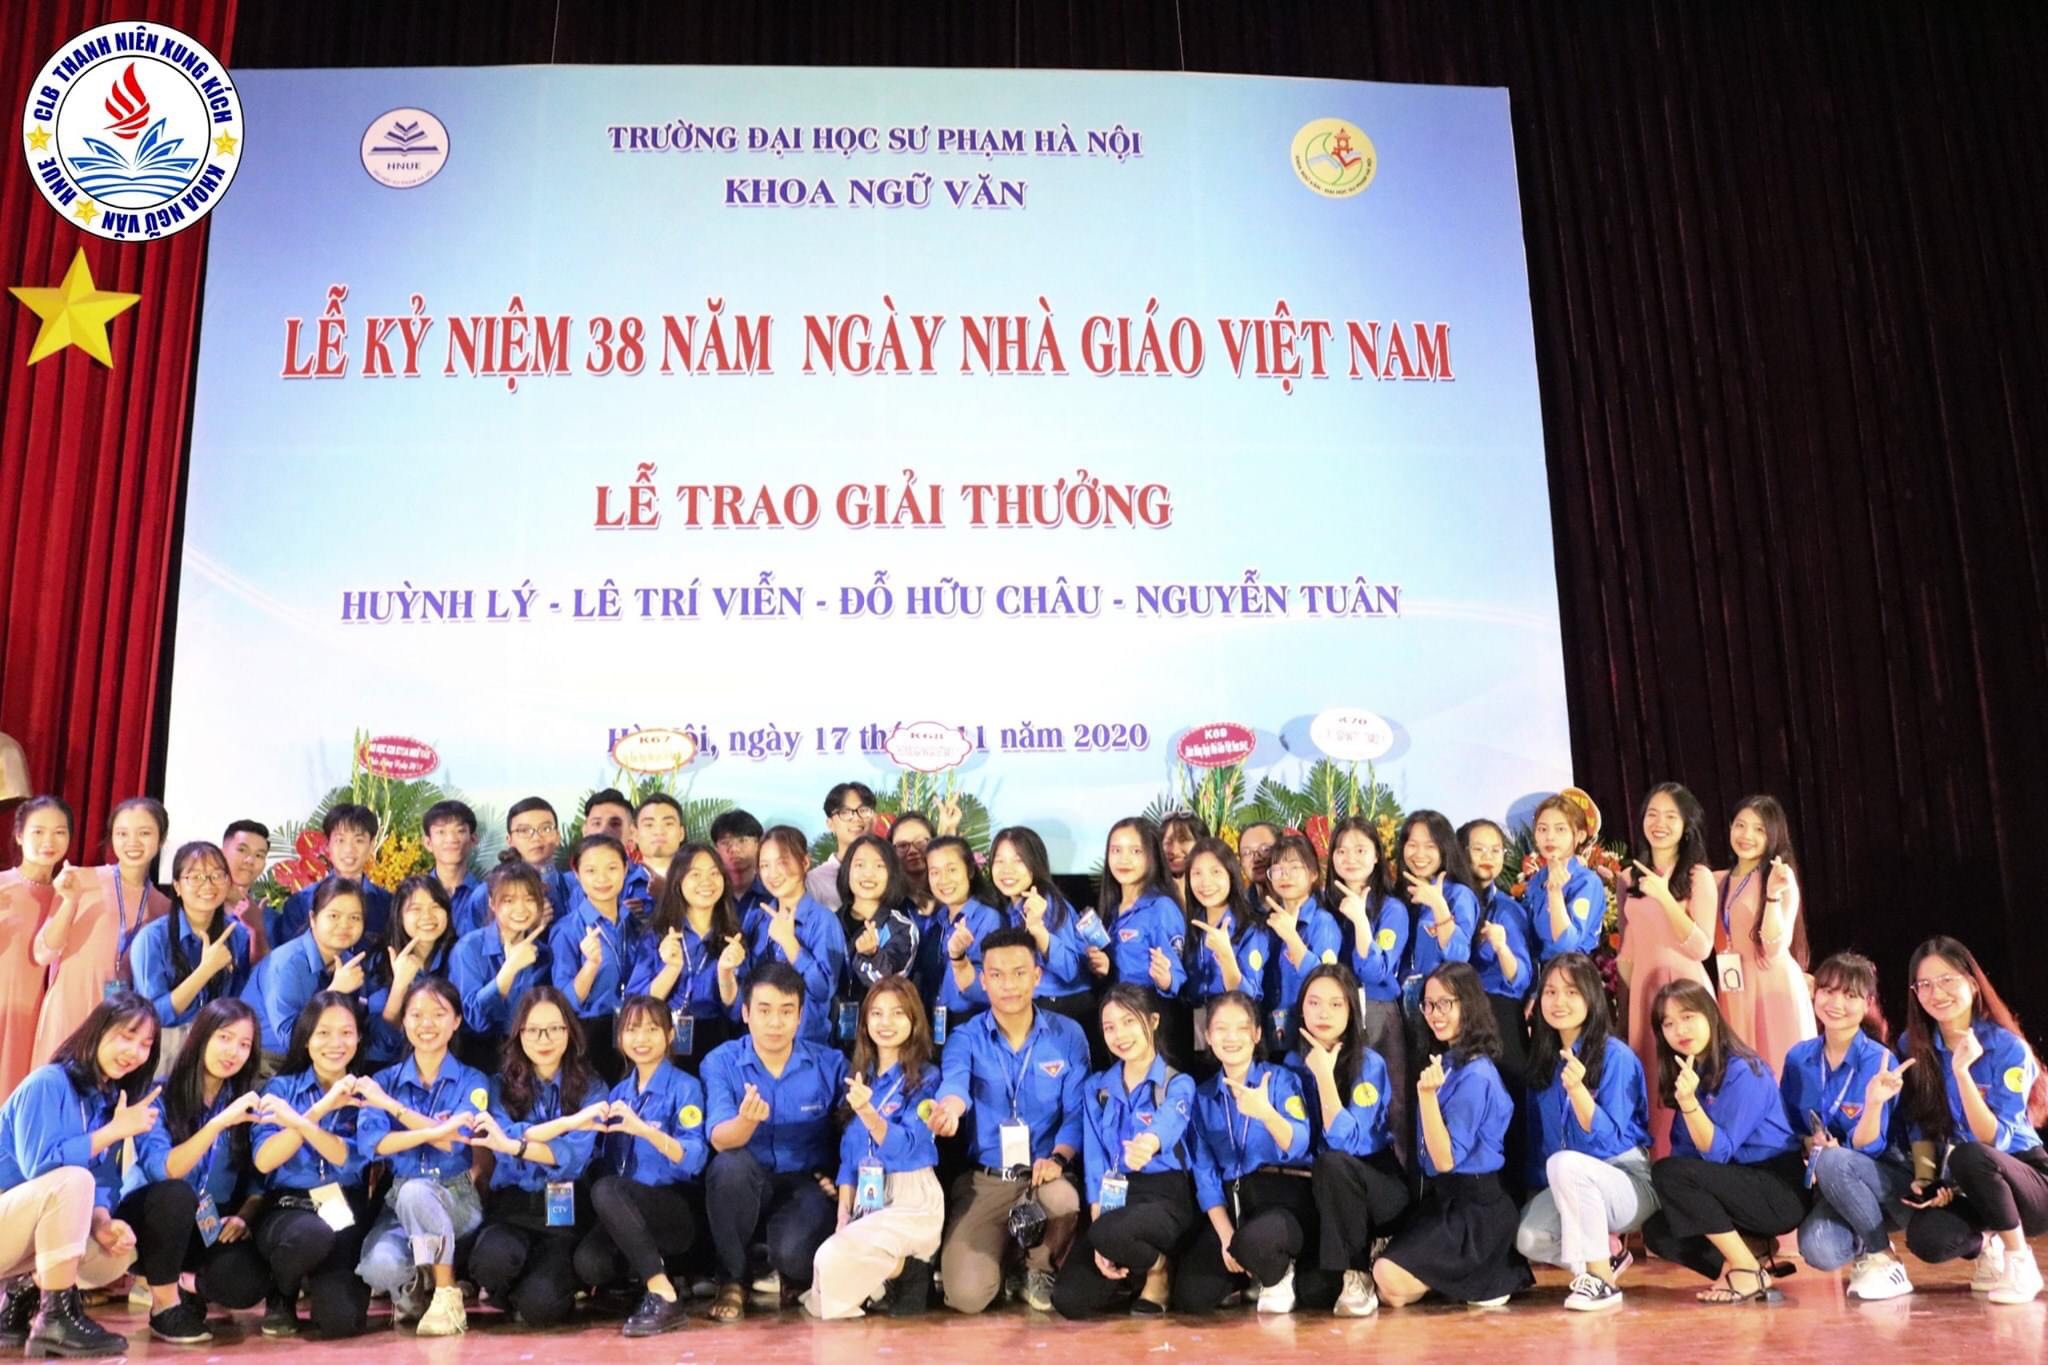  CLB Thanh niên Xung kích tham gia hỗ trợ các chương trình lớn của khoa Ngữ văn